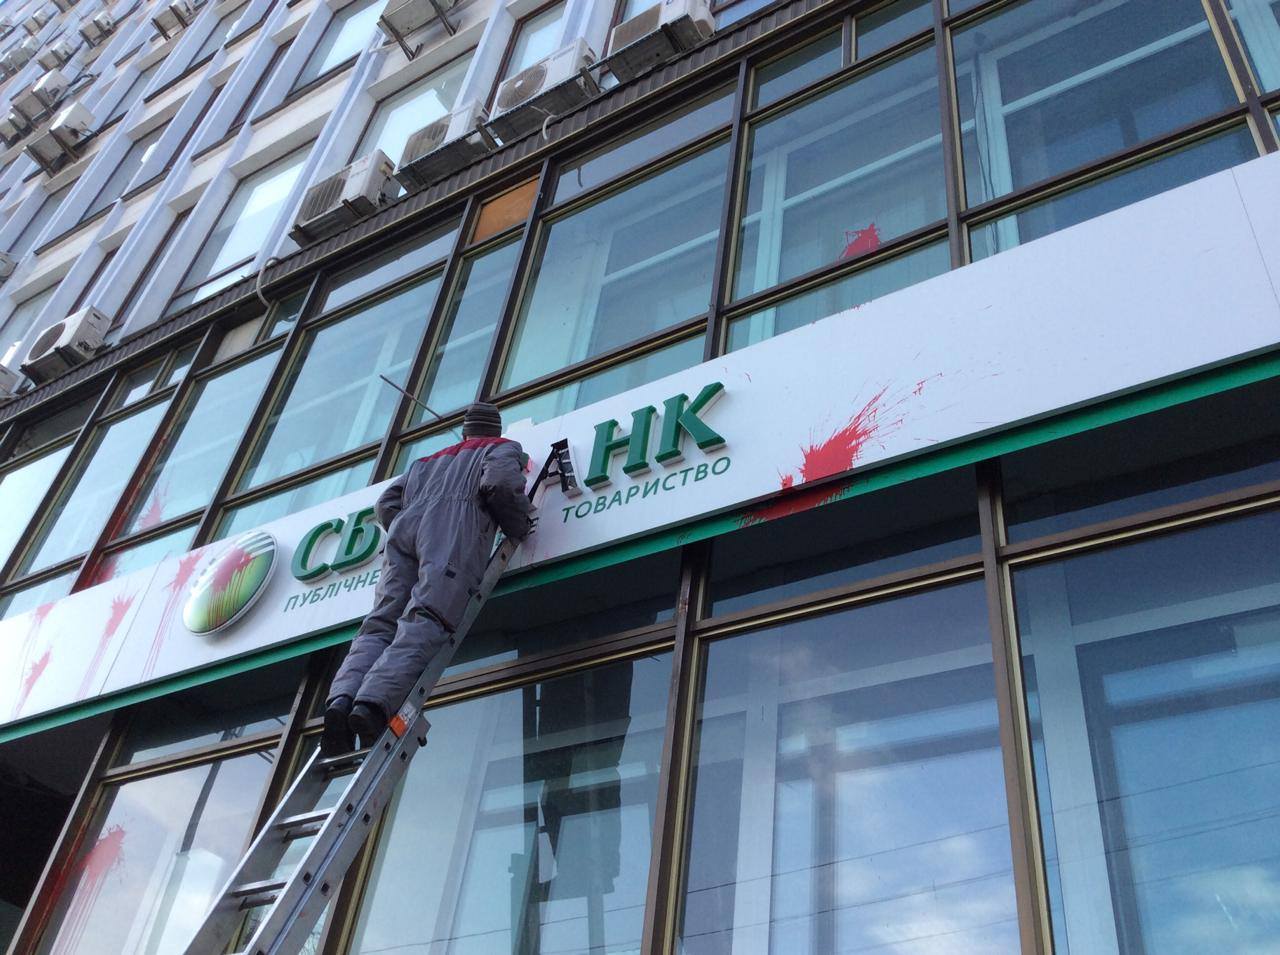 Под санкции попали банки, издательства и строительные компании РФ

- филиалы российских госбанков